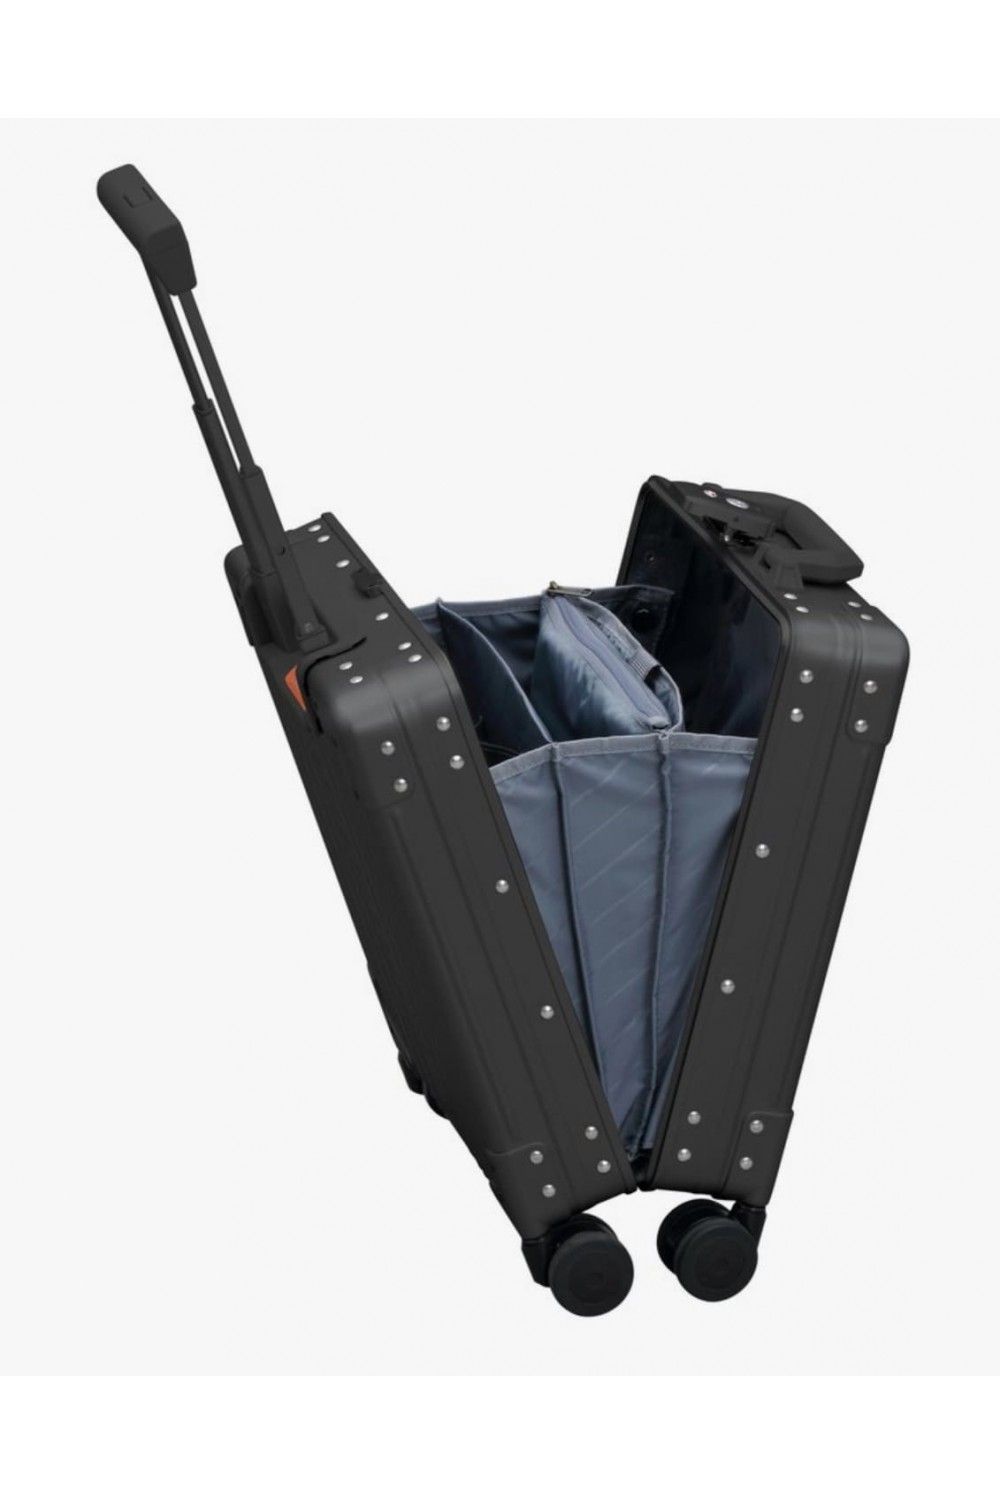 Handbag Alu Case Aleon 49cm 4 wheel